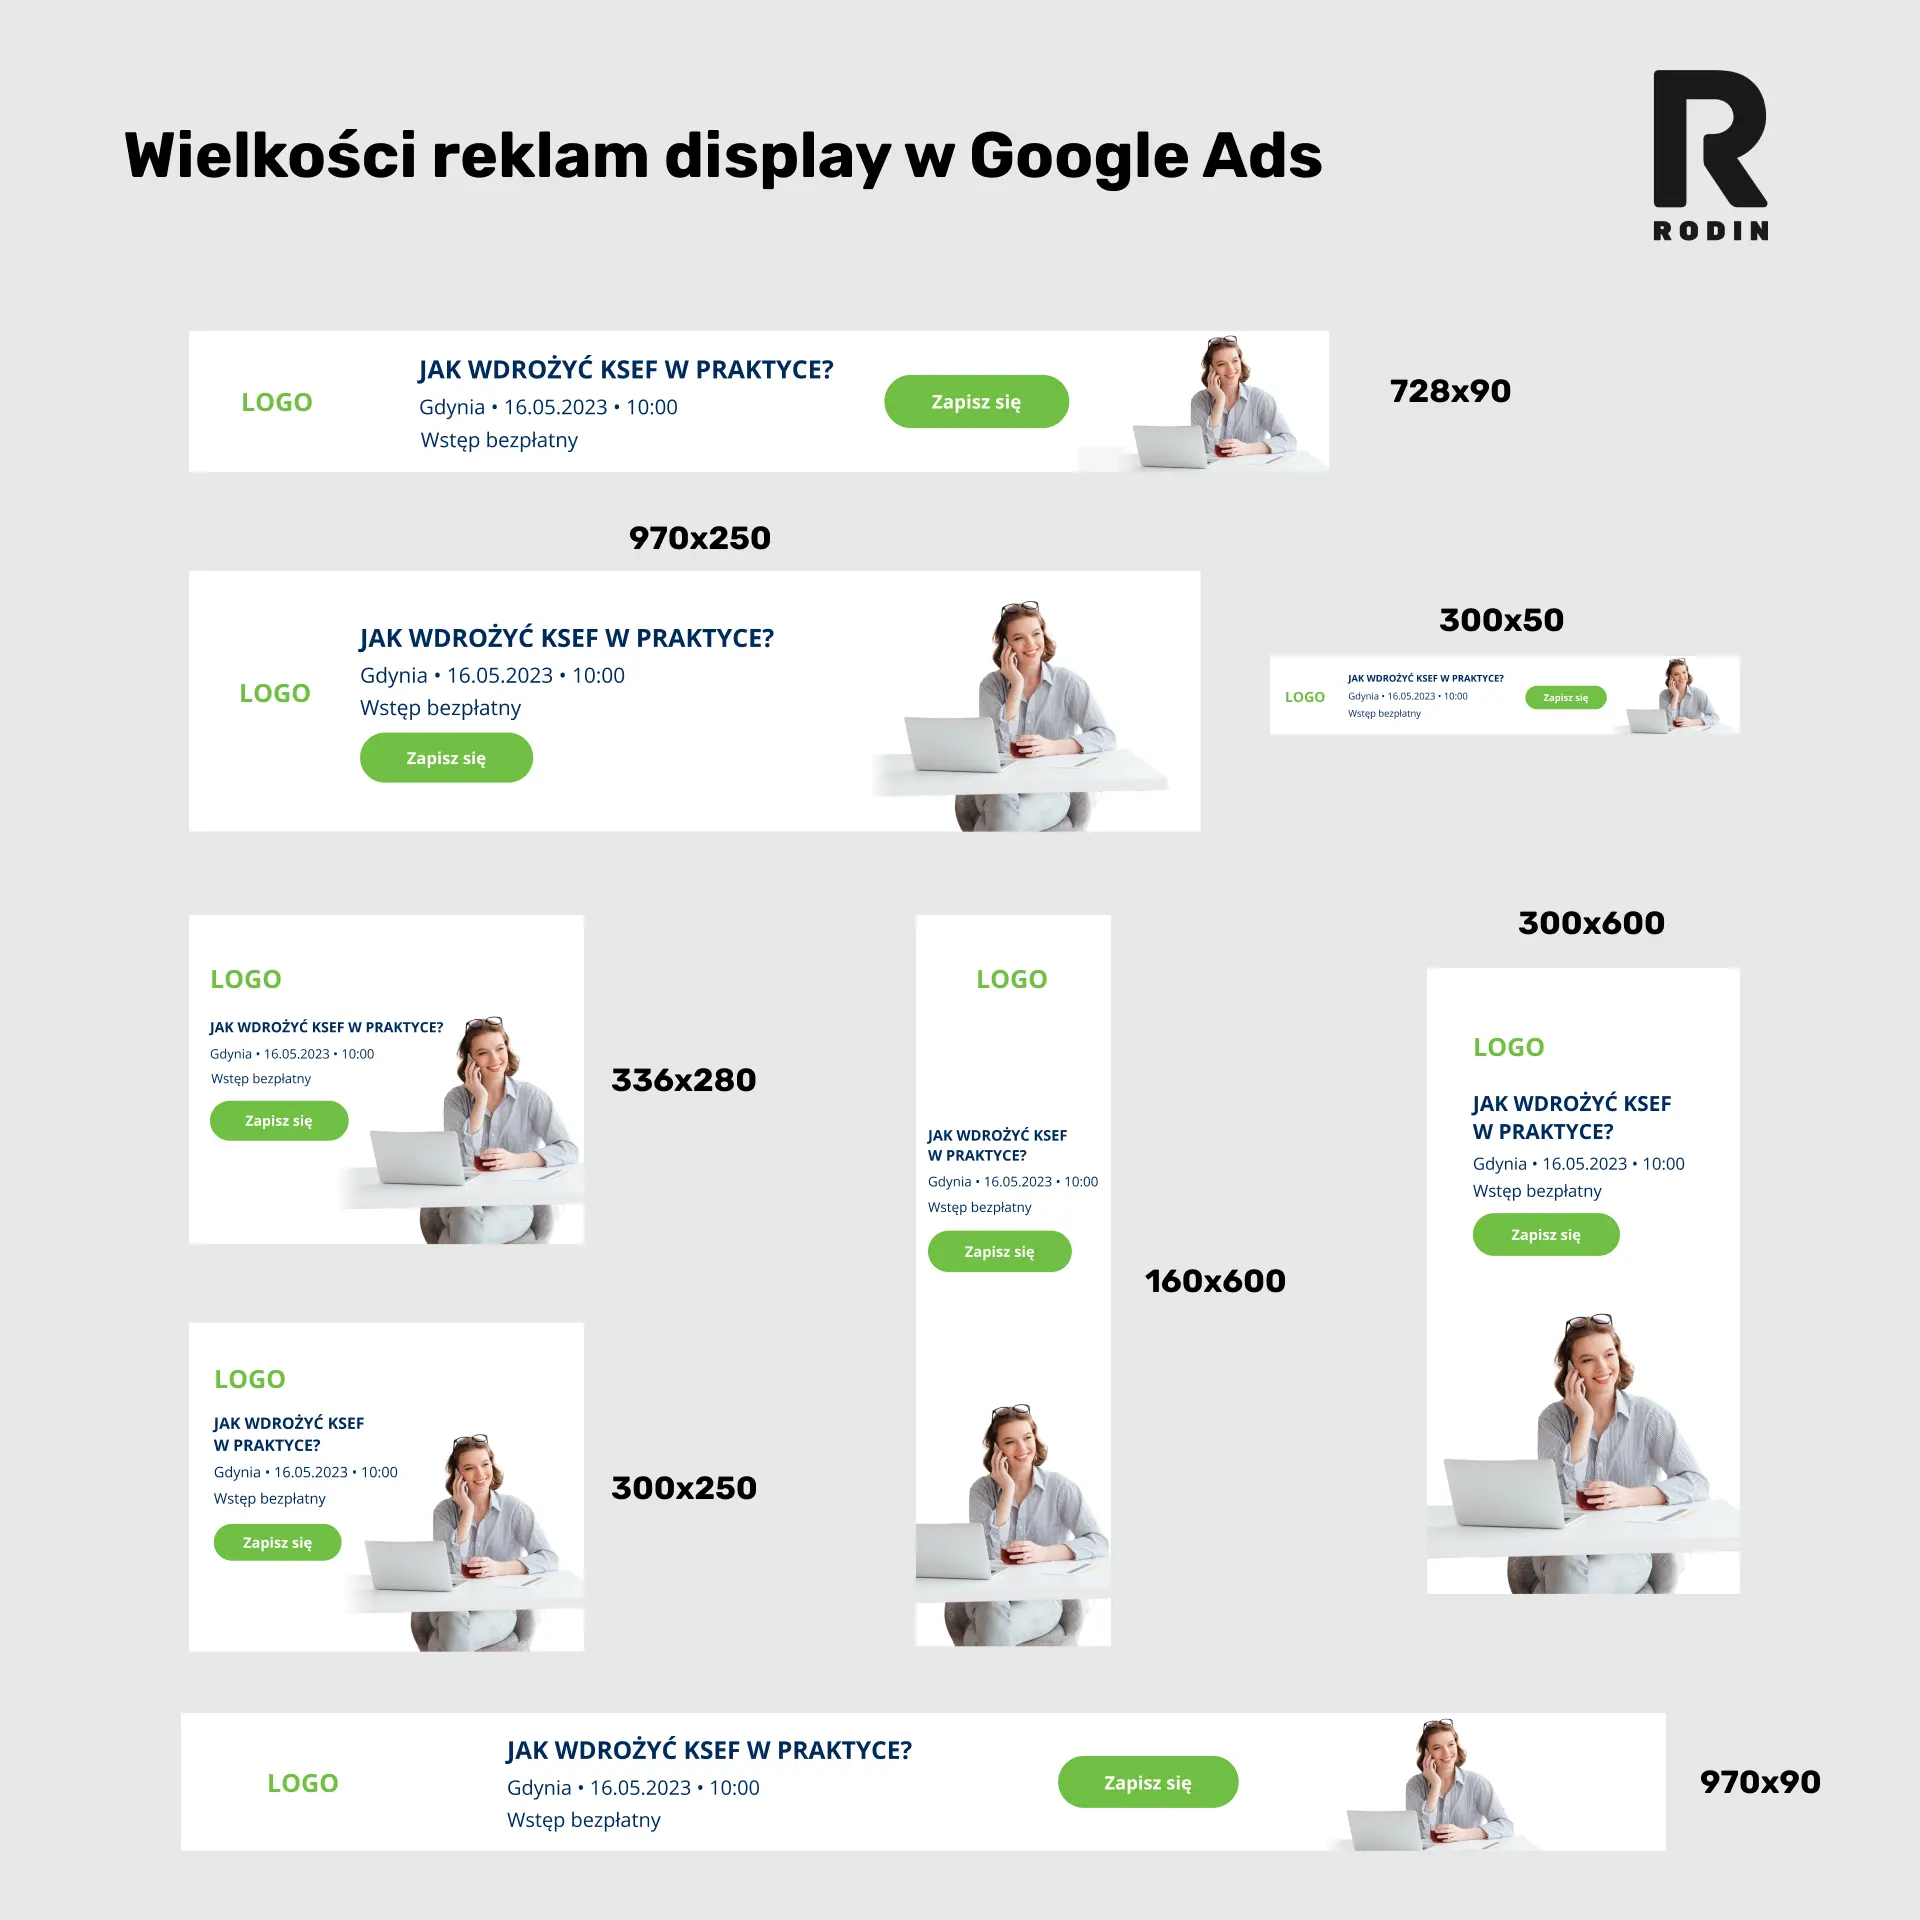 Wielkość reklam display w Google Ads